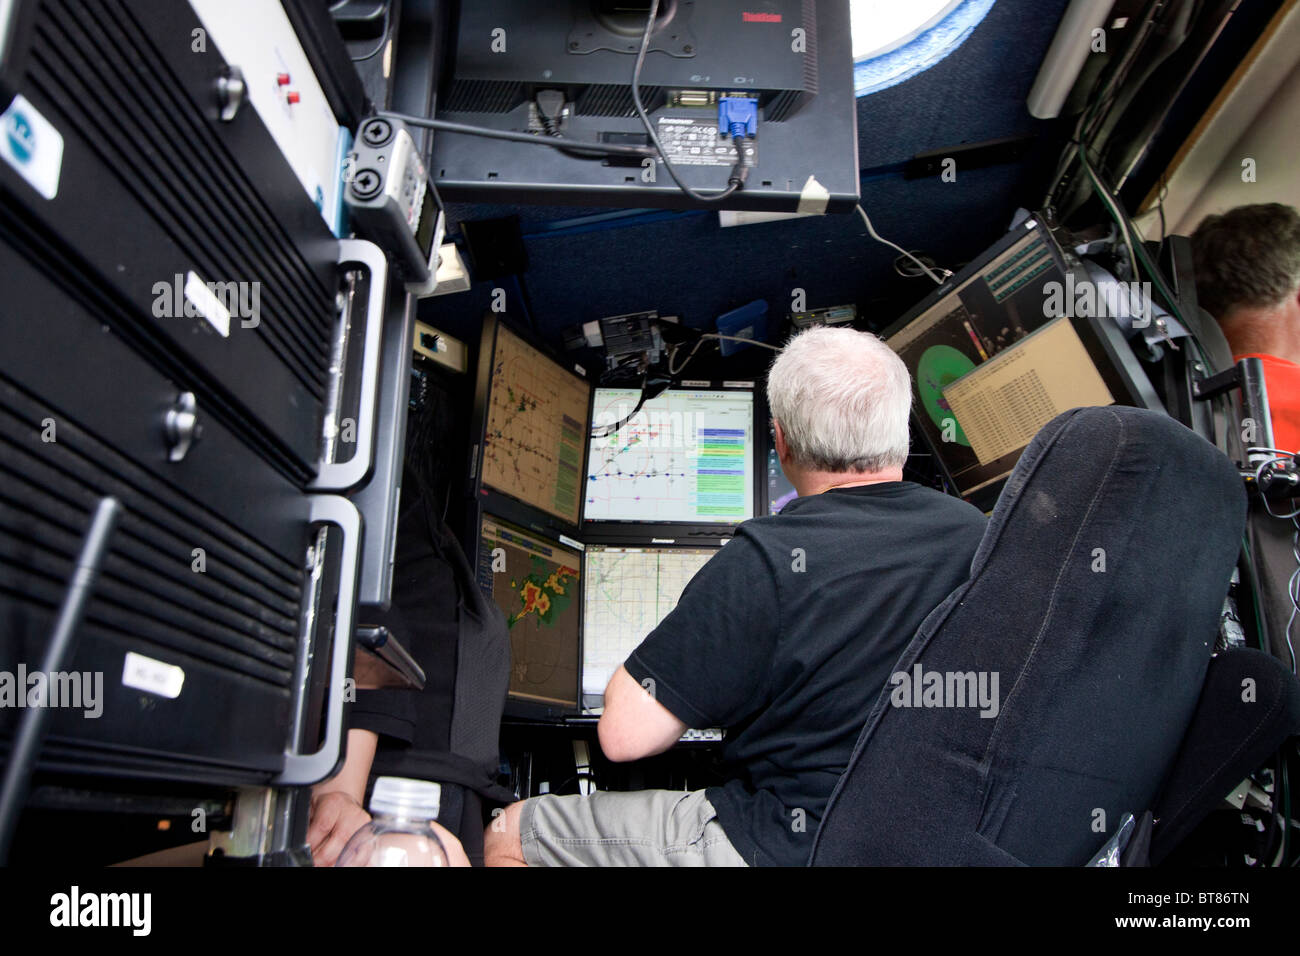 Vortex 2 membre du comité d'Josh Wurman analyizes les données pendant une tempête chase de l'intérieur d'un camion radar Doppler on Wheels Banque D'Images